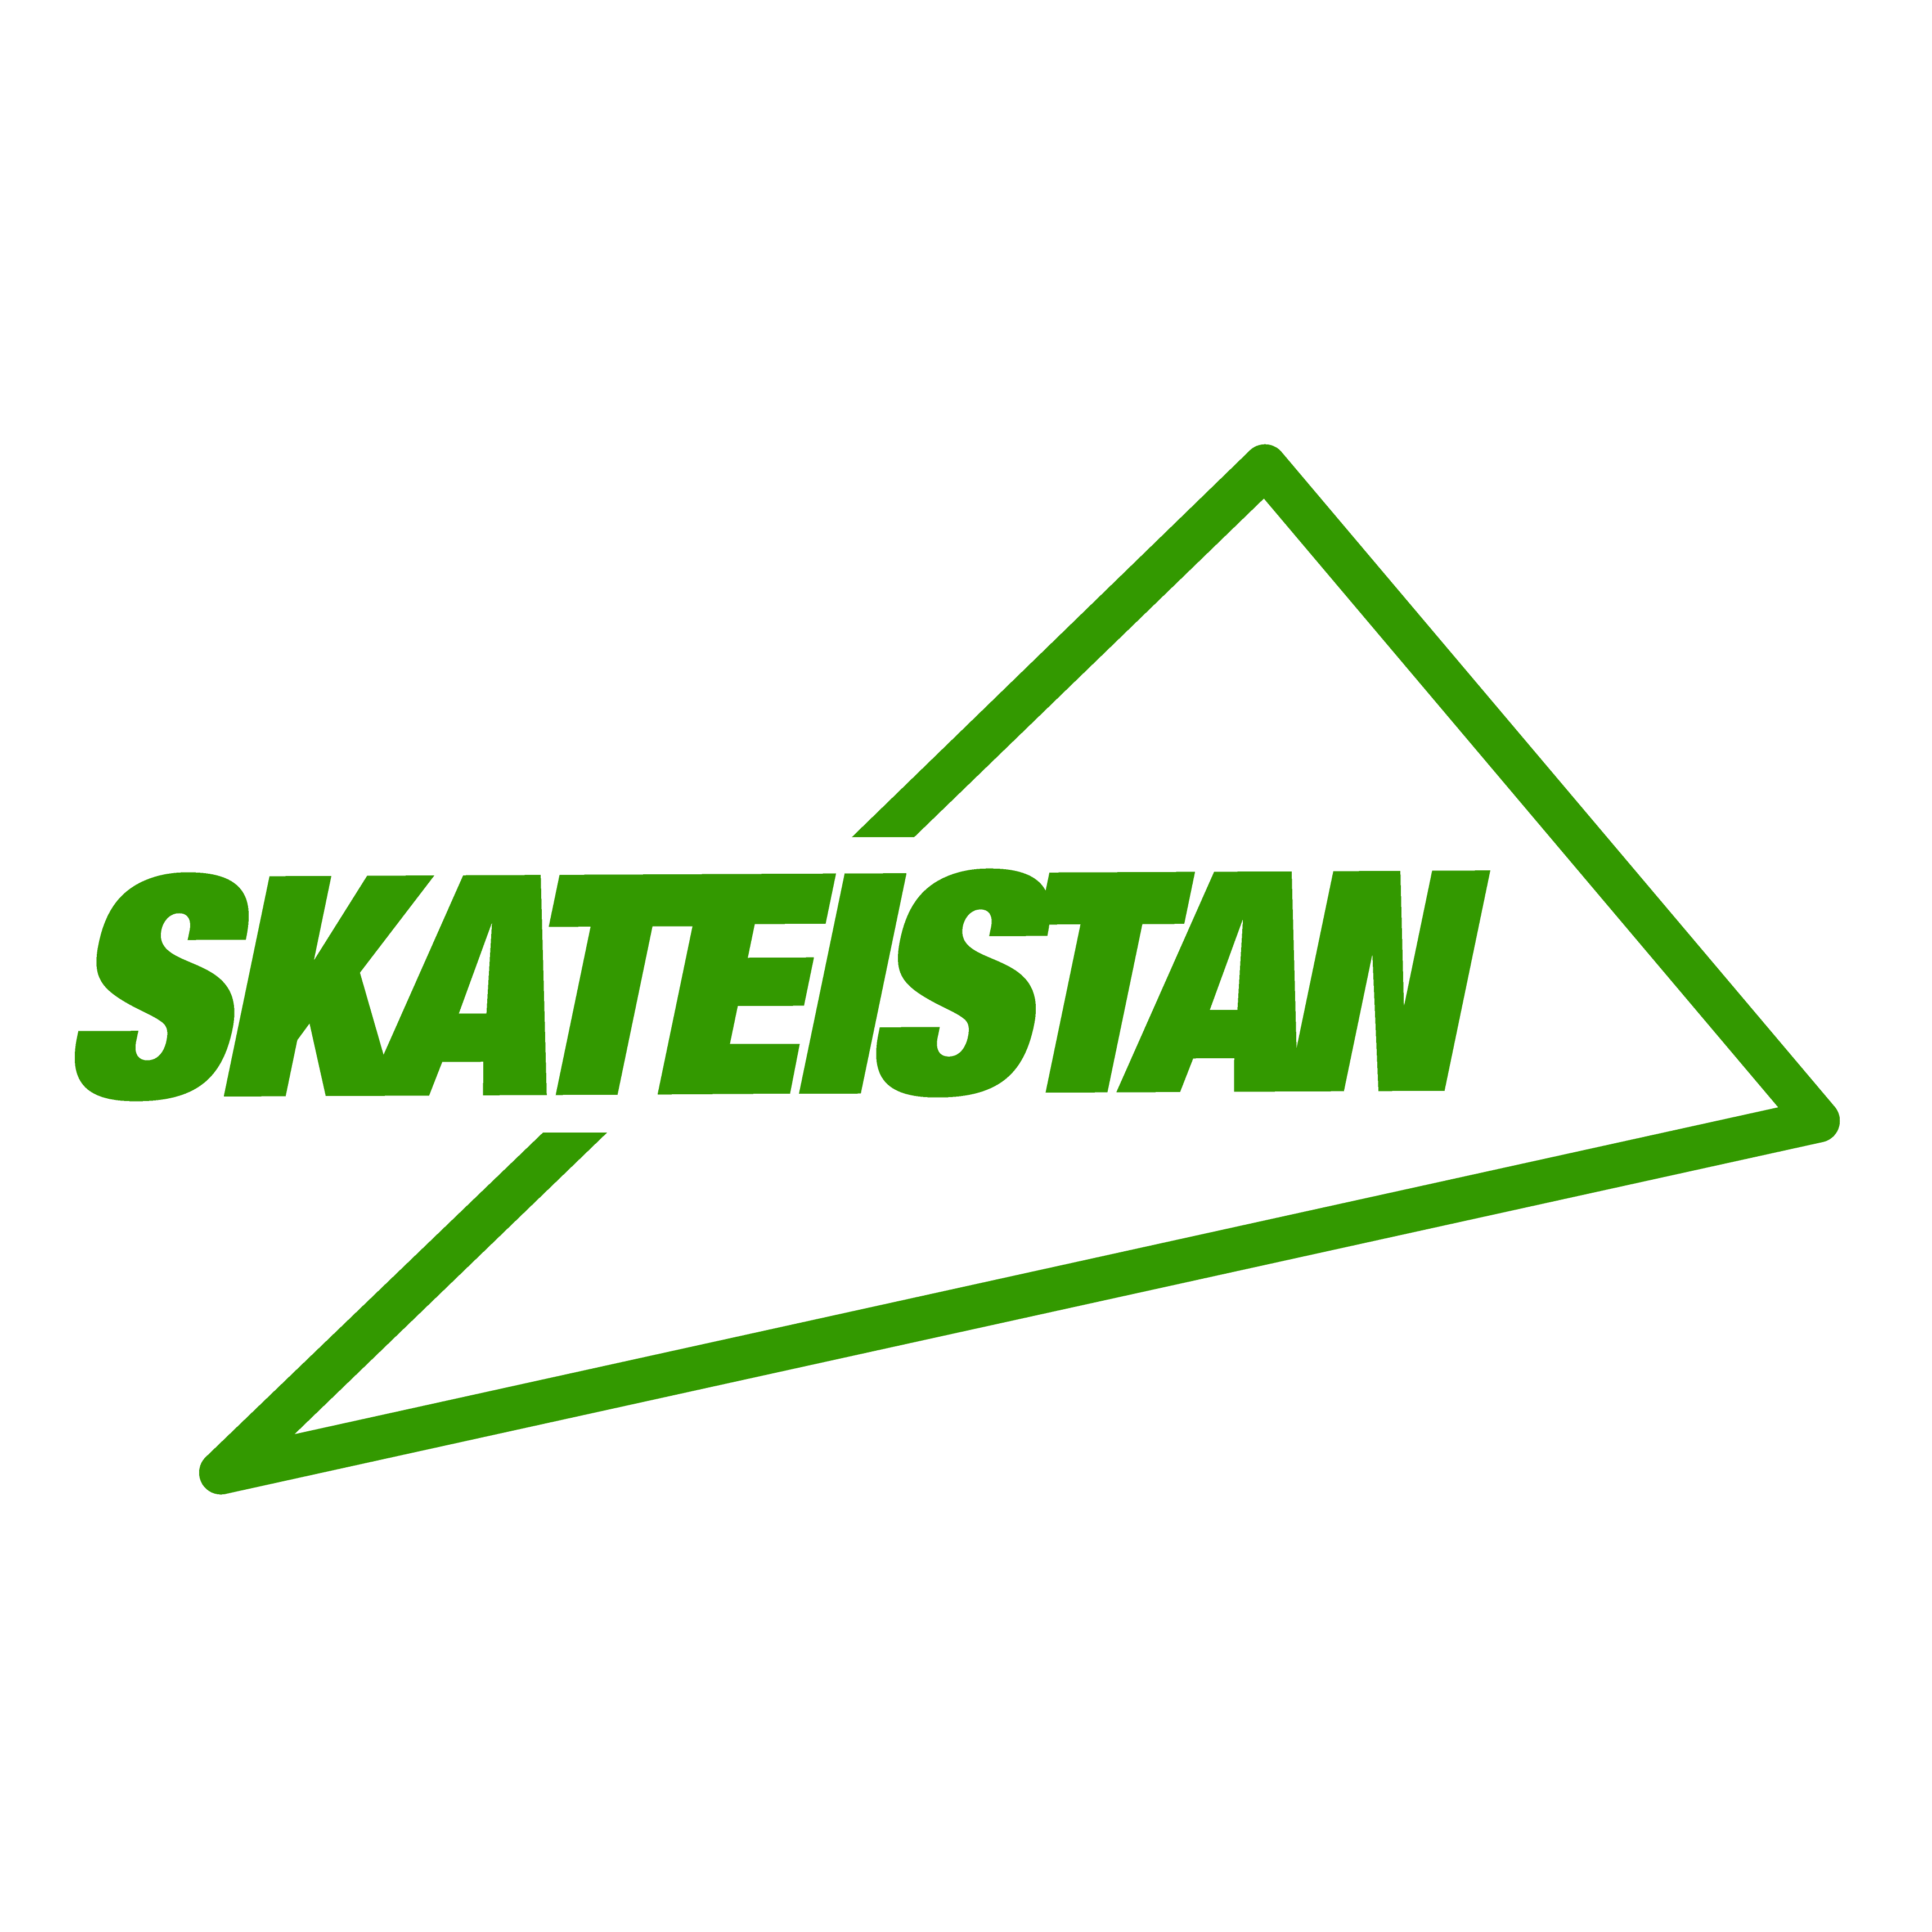 Skateistan logo